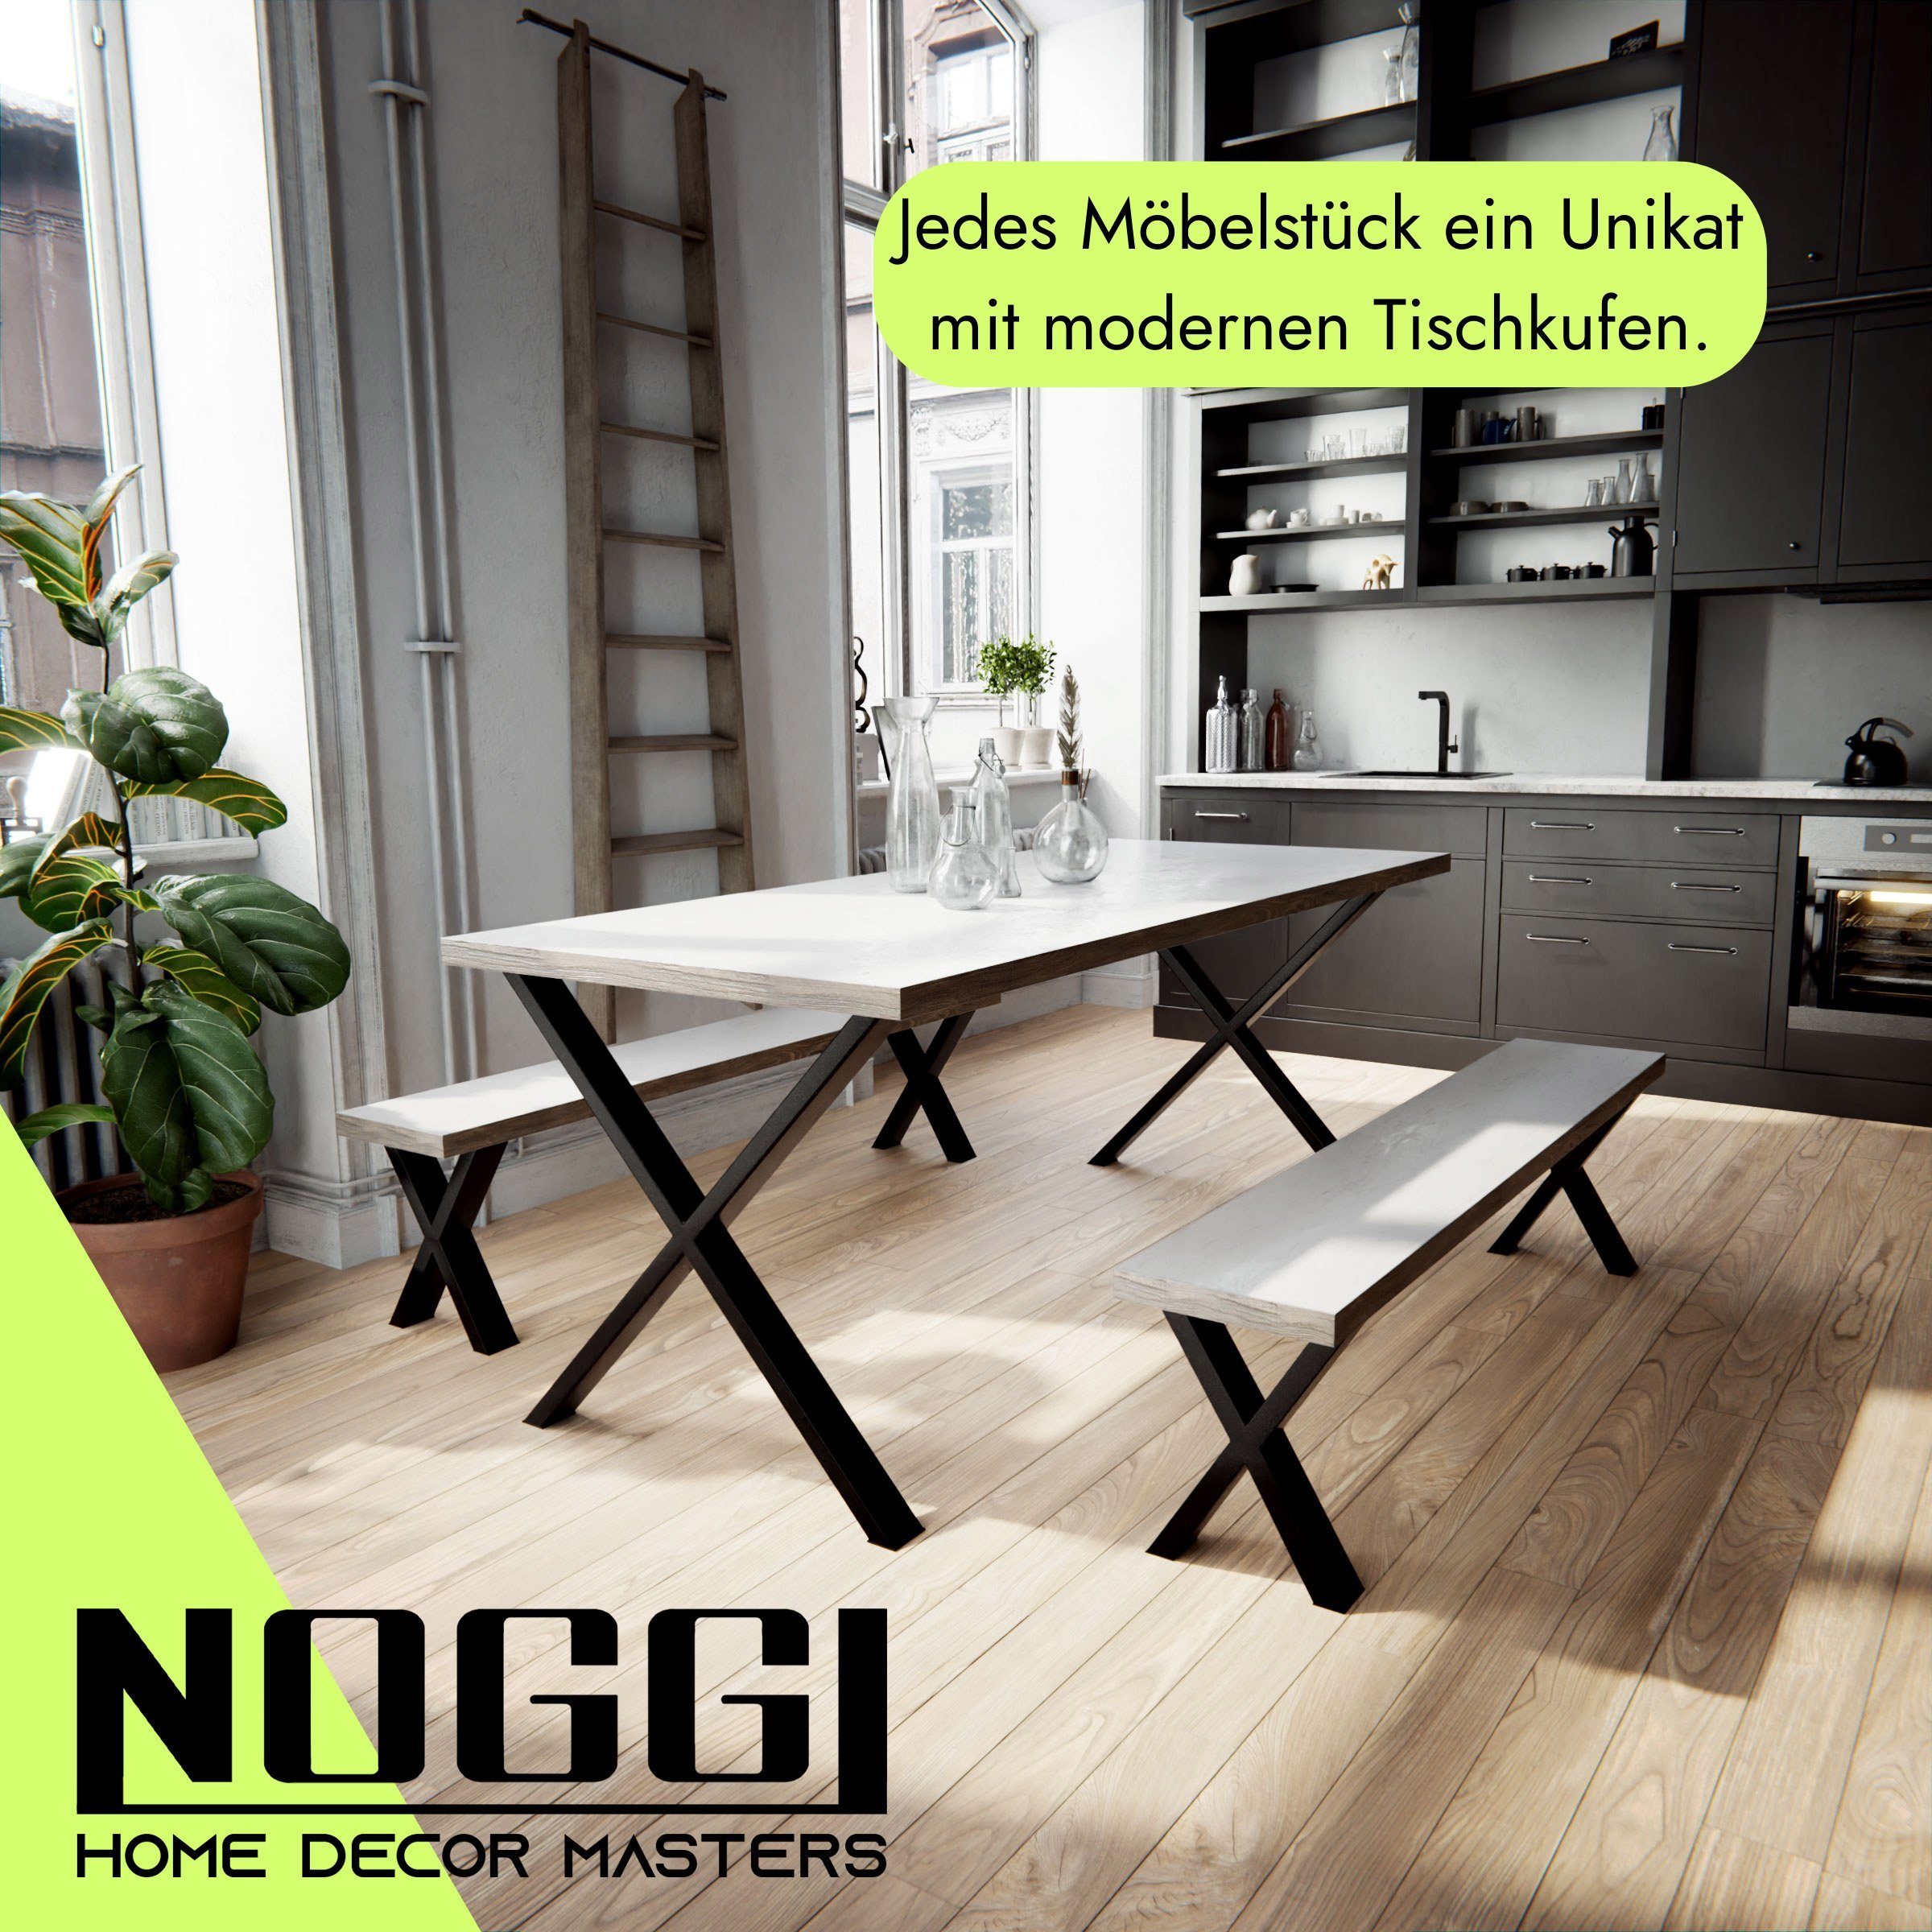 NOGGI - Home Decor DIY-Home Tischkufen Sitzbank I Masters Möbelkufen Projekt für anthrazit - 30x40cm Form, - X- 2 Dein Tischbein